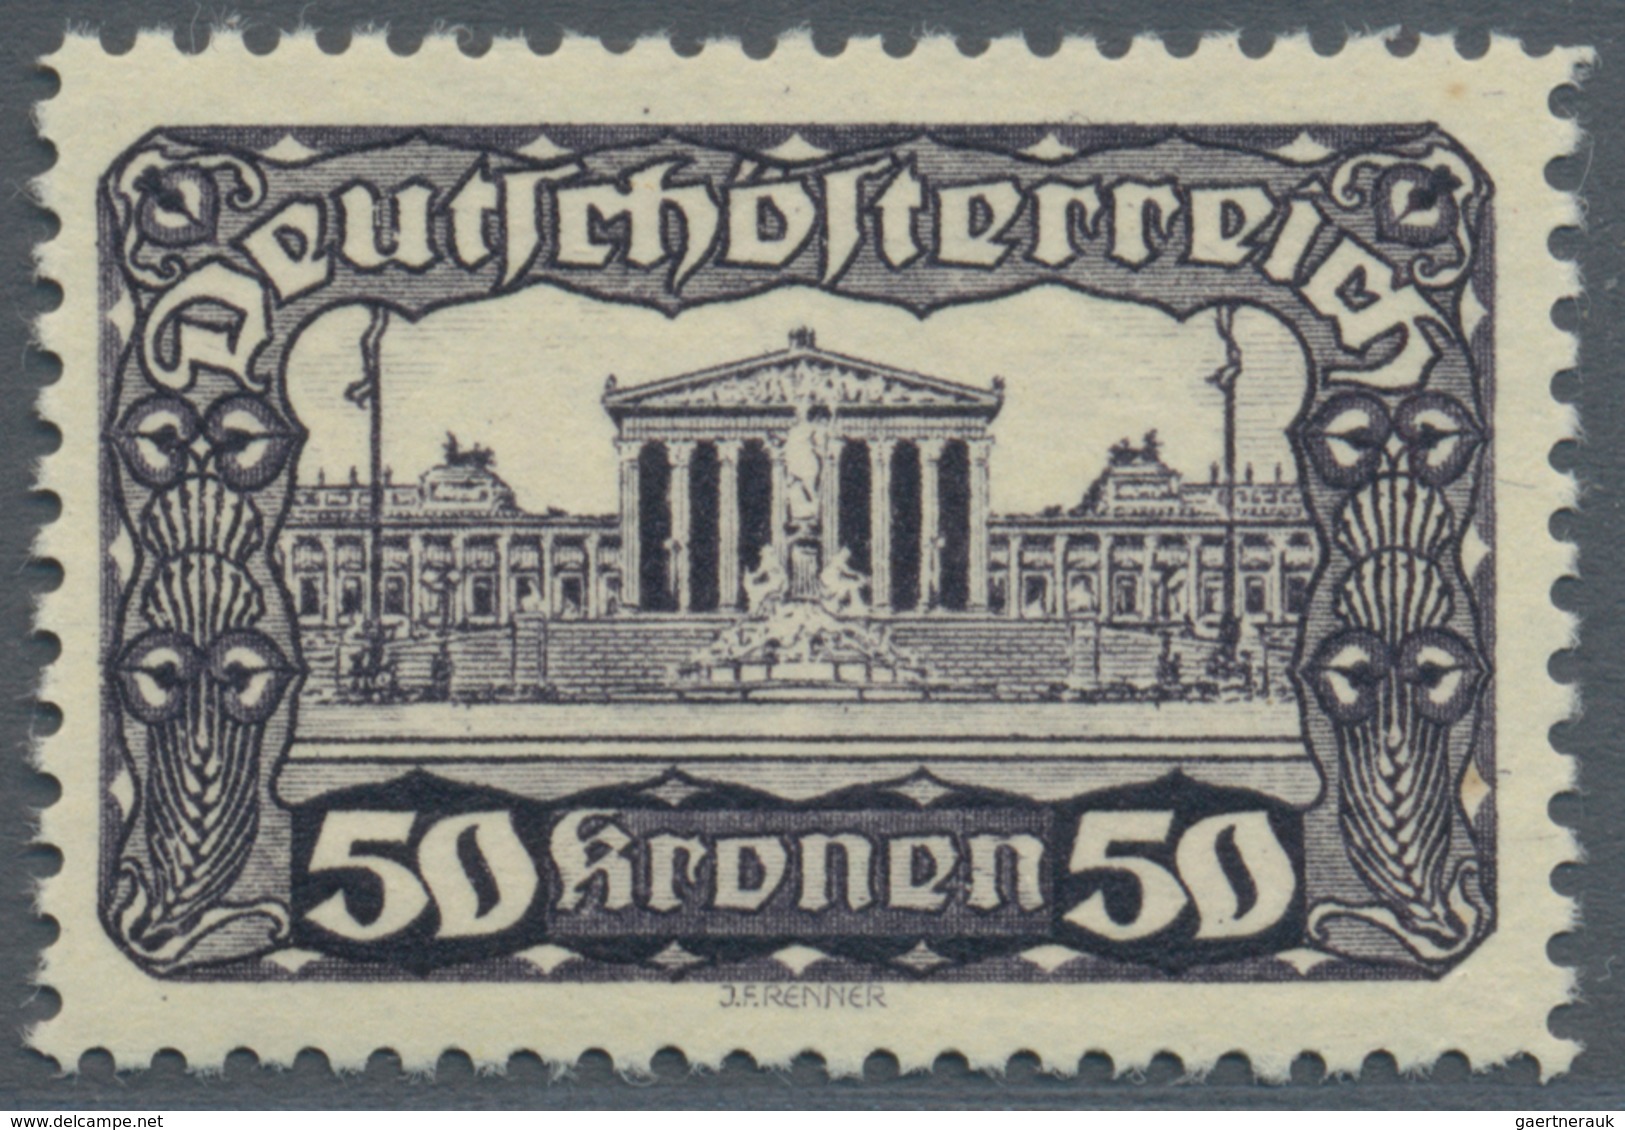 Österreich: 1919/1921, Freimarken "Parlamentsgebäude", alle acht Werte in Linienzähnung 11½, postfri